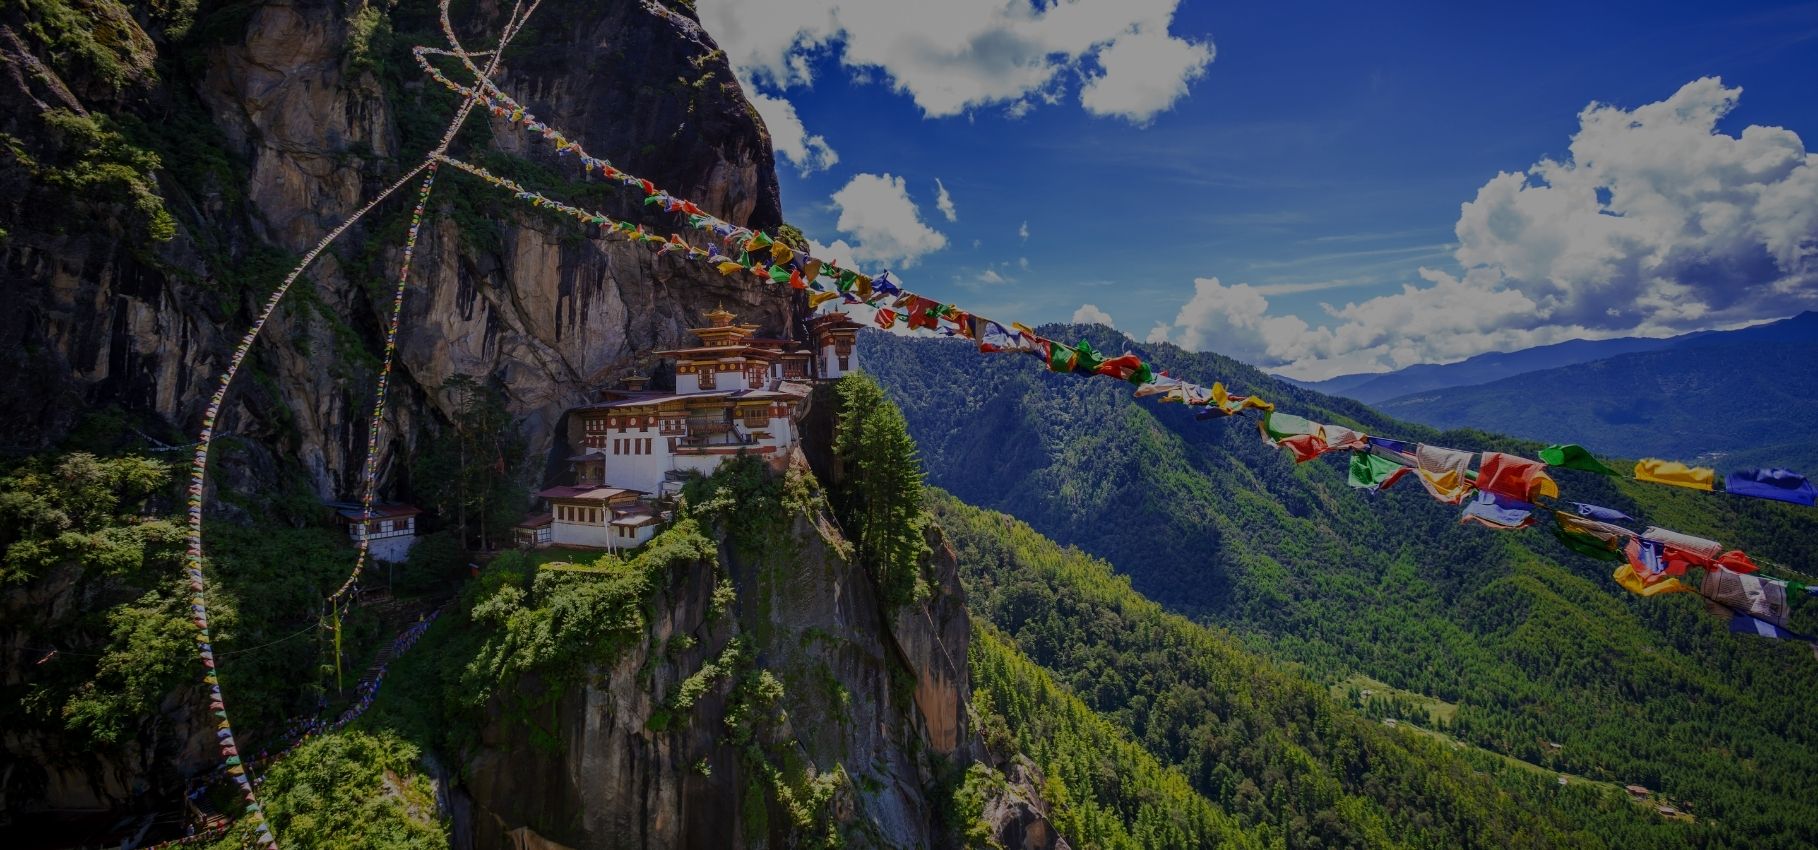 Visiting Taktsang Monastery or Tiger’s Nest, Bhutan